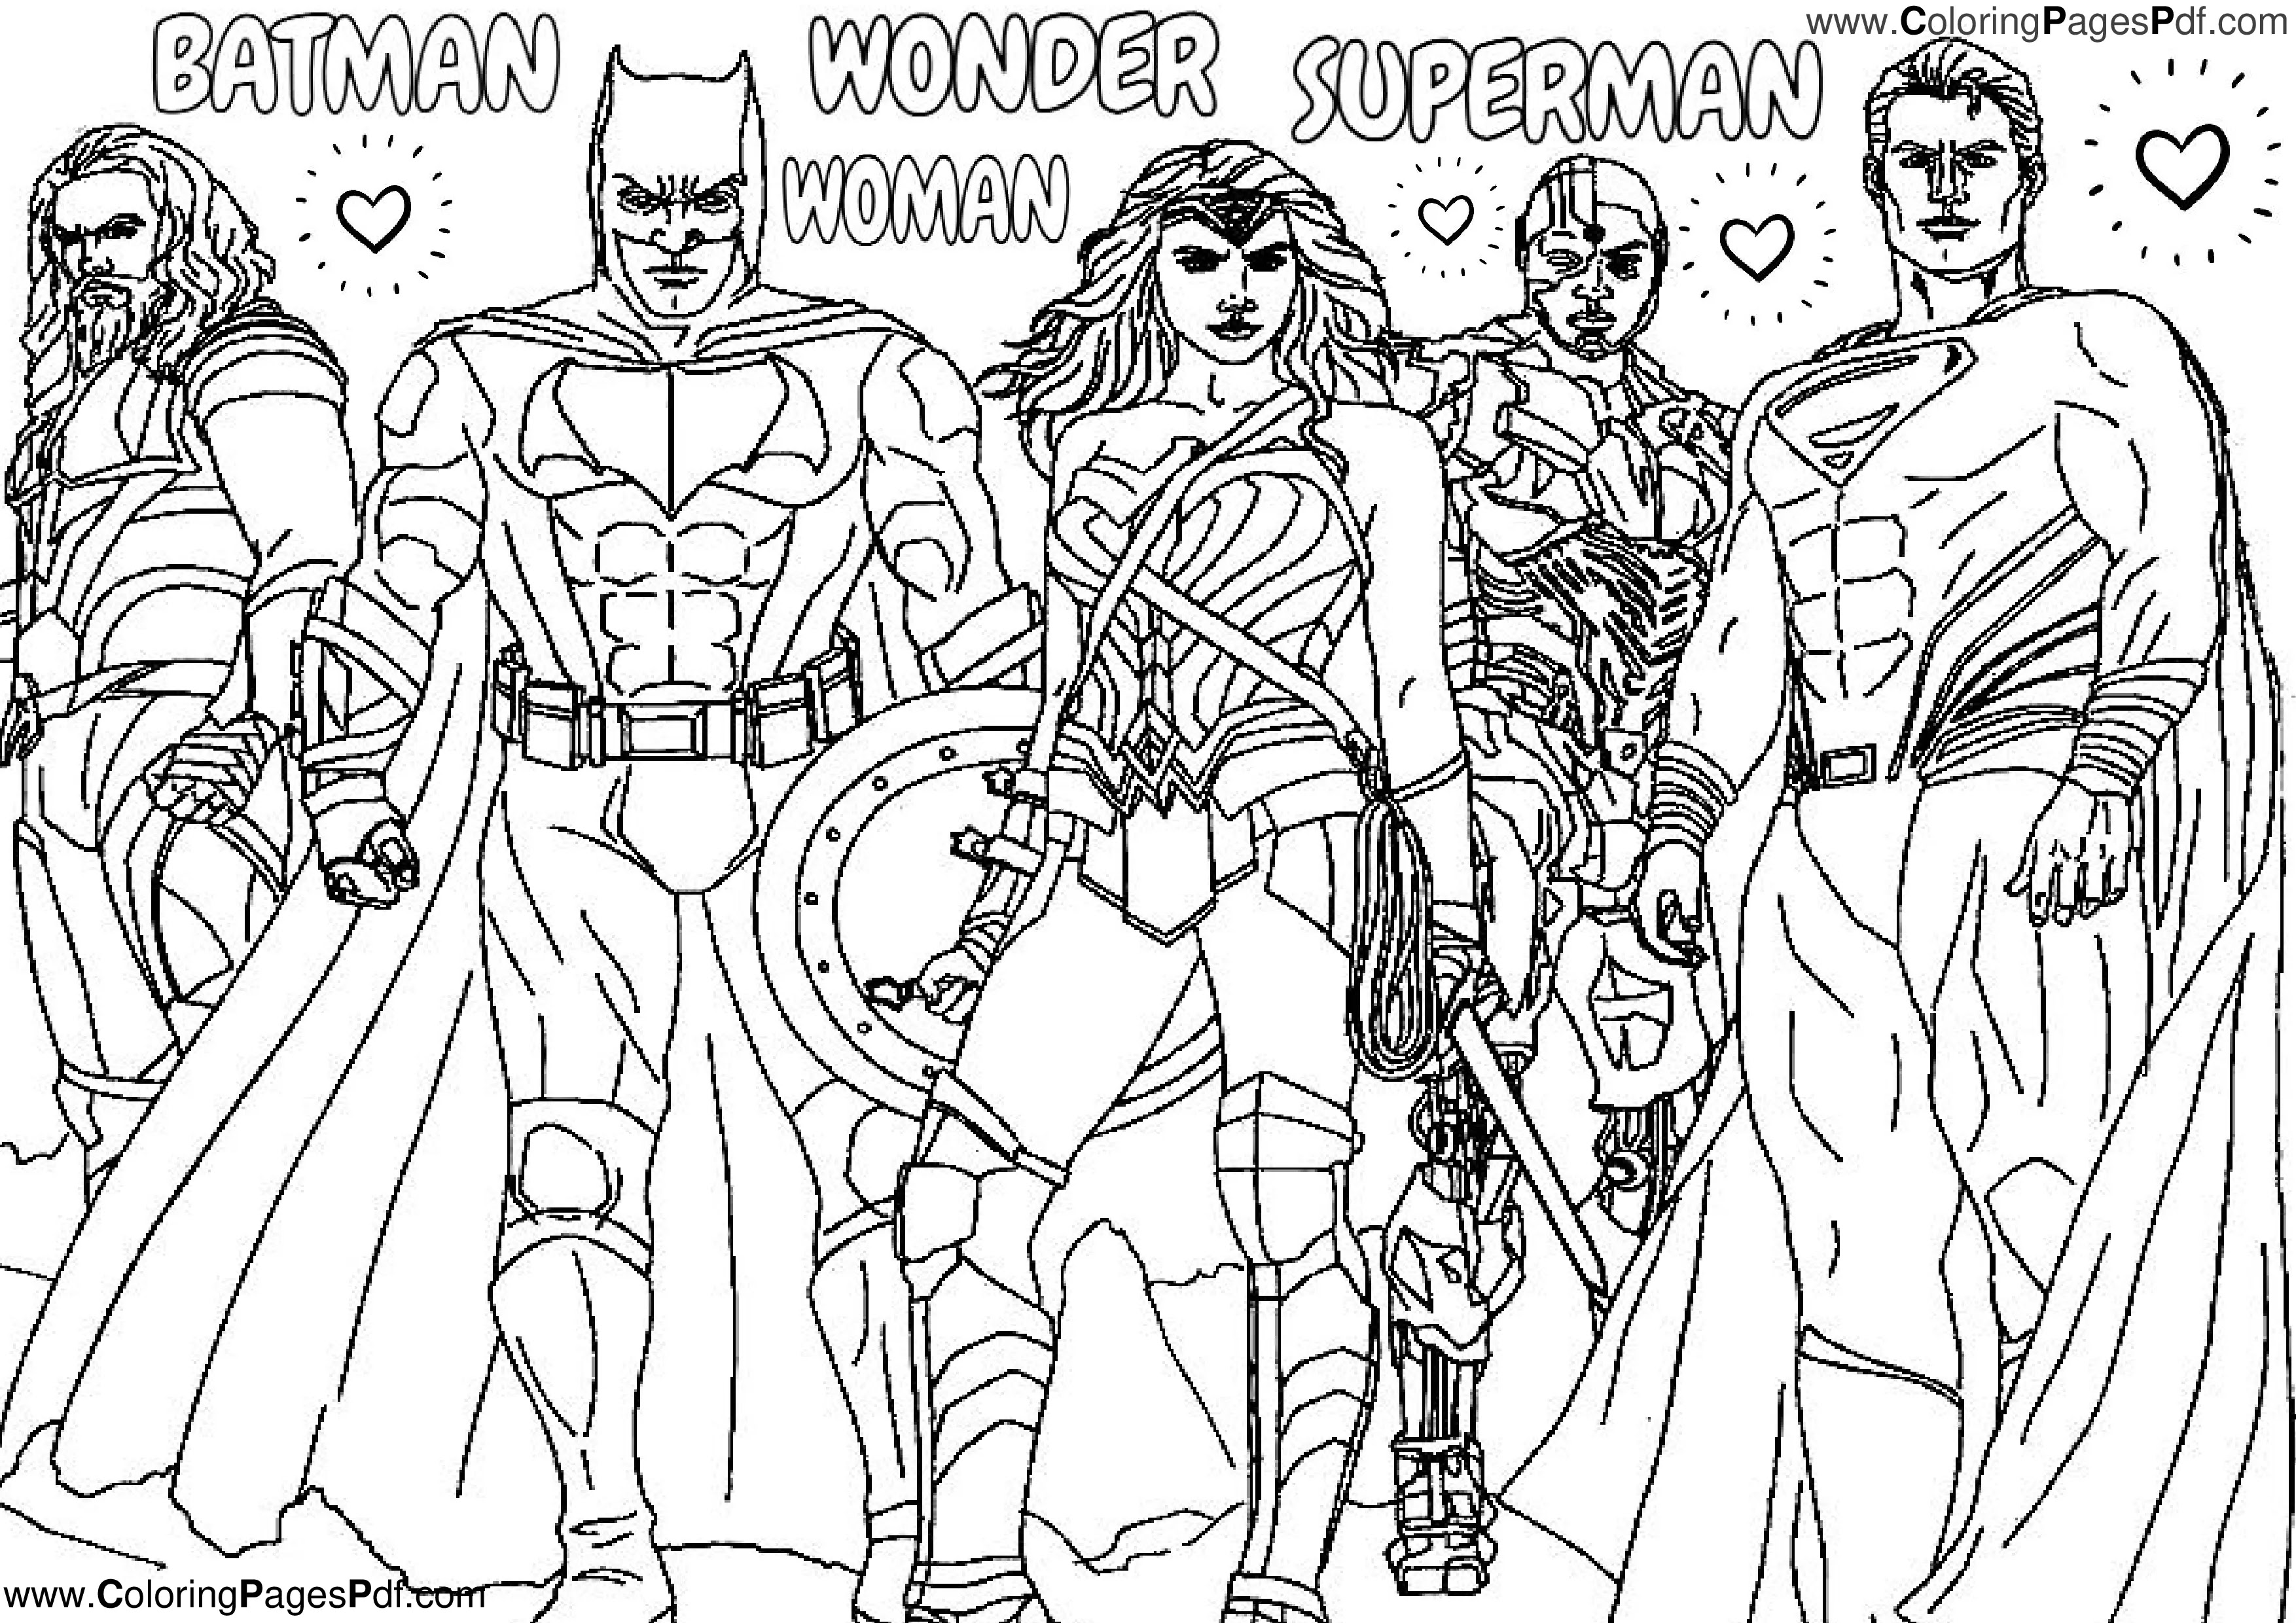 Wonder Woman Superman Batman coloring pages